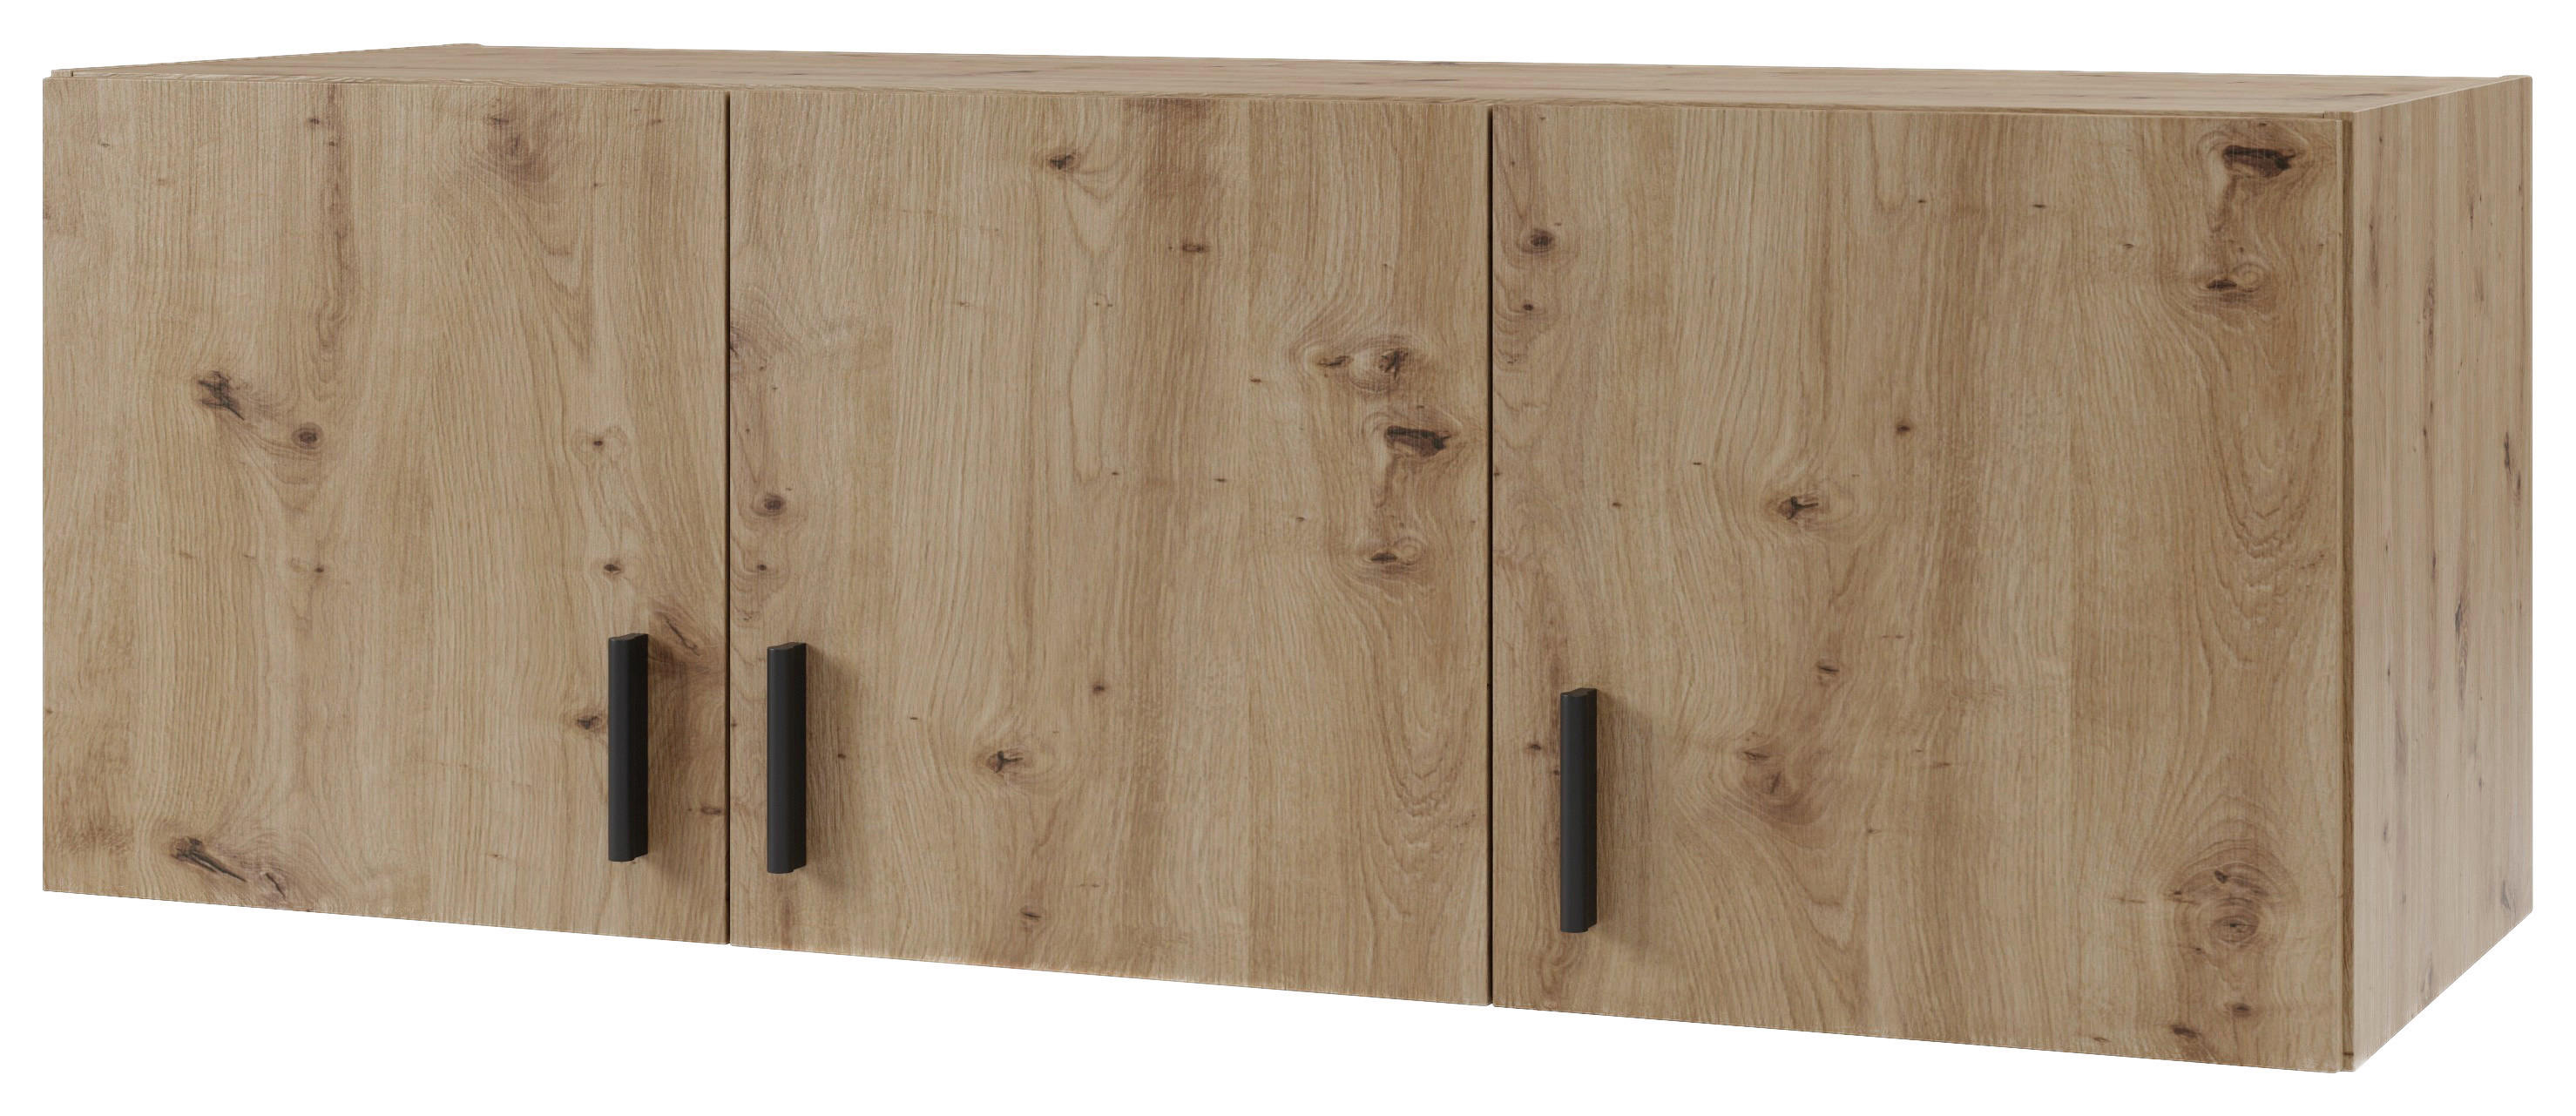 NADSTAVEC NA SKRIŇU, dub artisan, 141,2/50/52,1 cm - čierna/dub artisan, Konventionell, kompozitné drevo/plast (141,2/50/52,1cm) - Boxxx